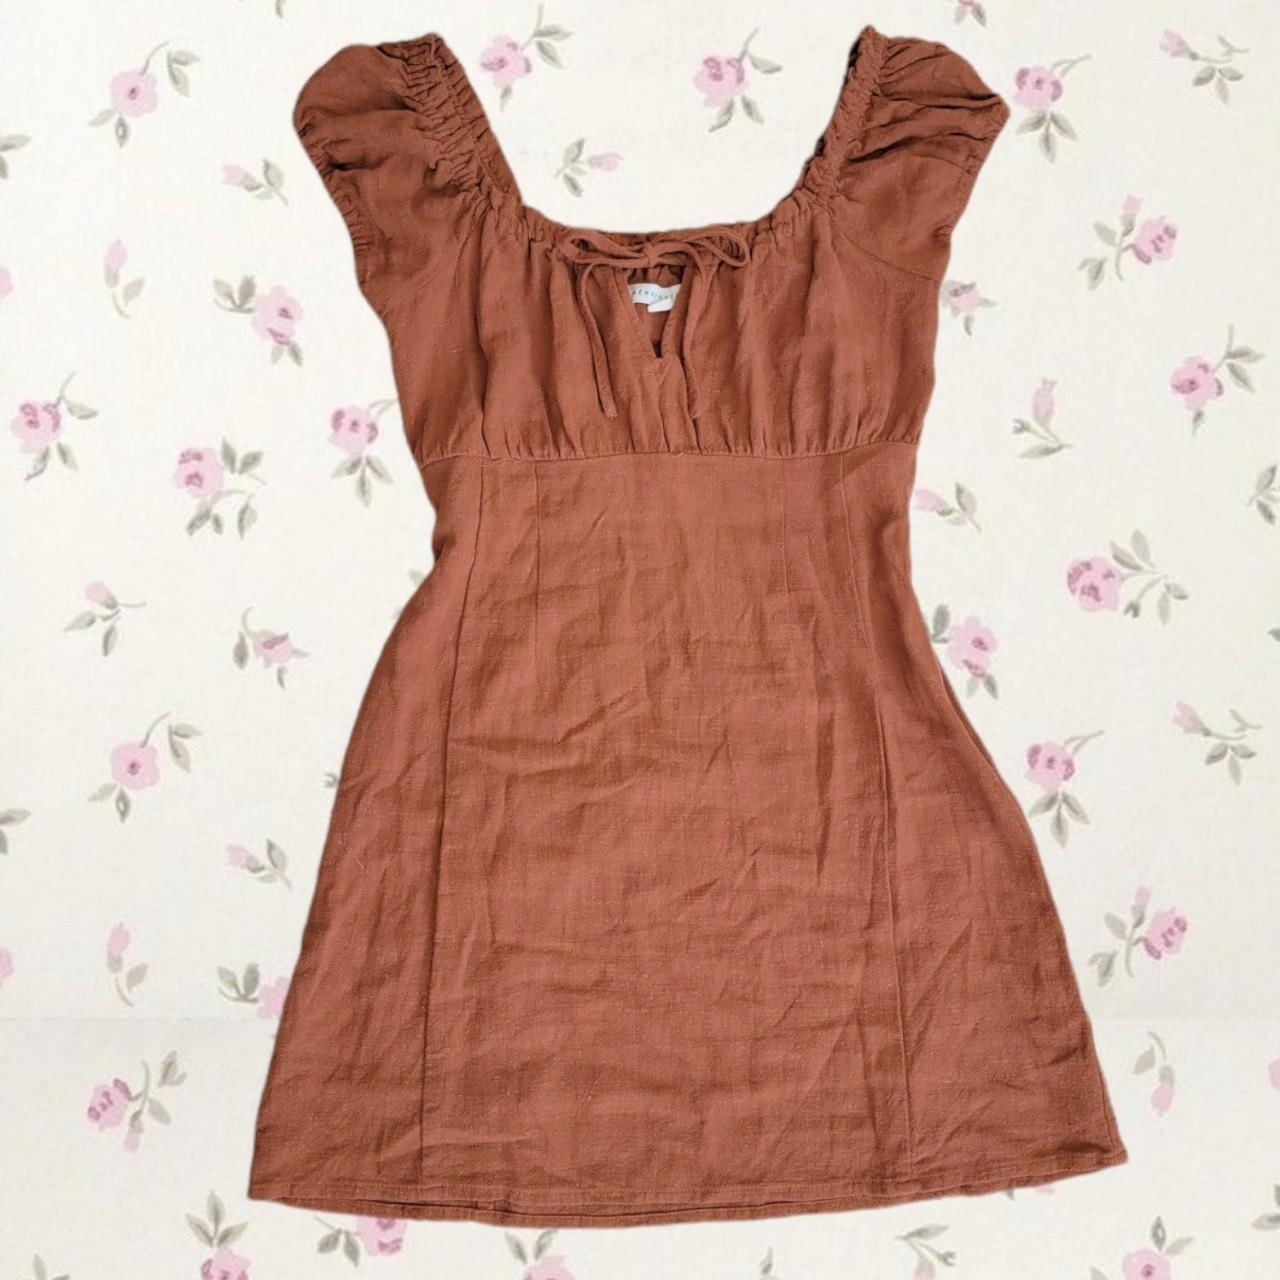 Brown Linen Puff Sleeve Milkmaid Dress Short... - Depop